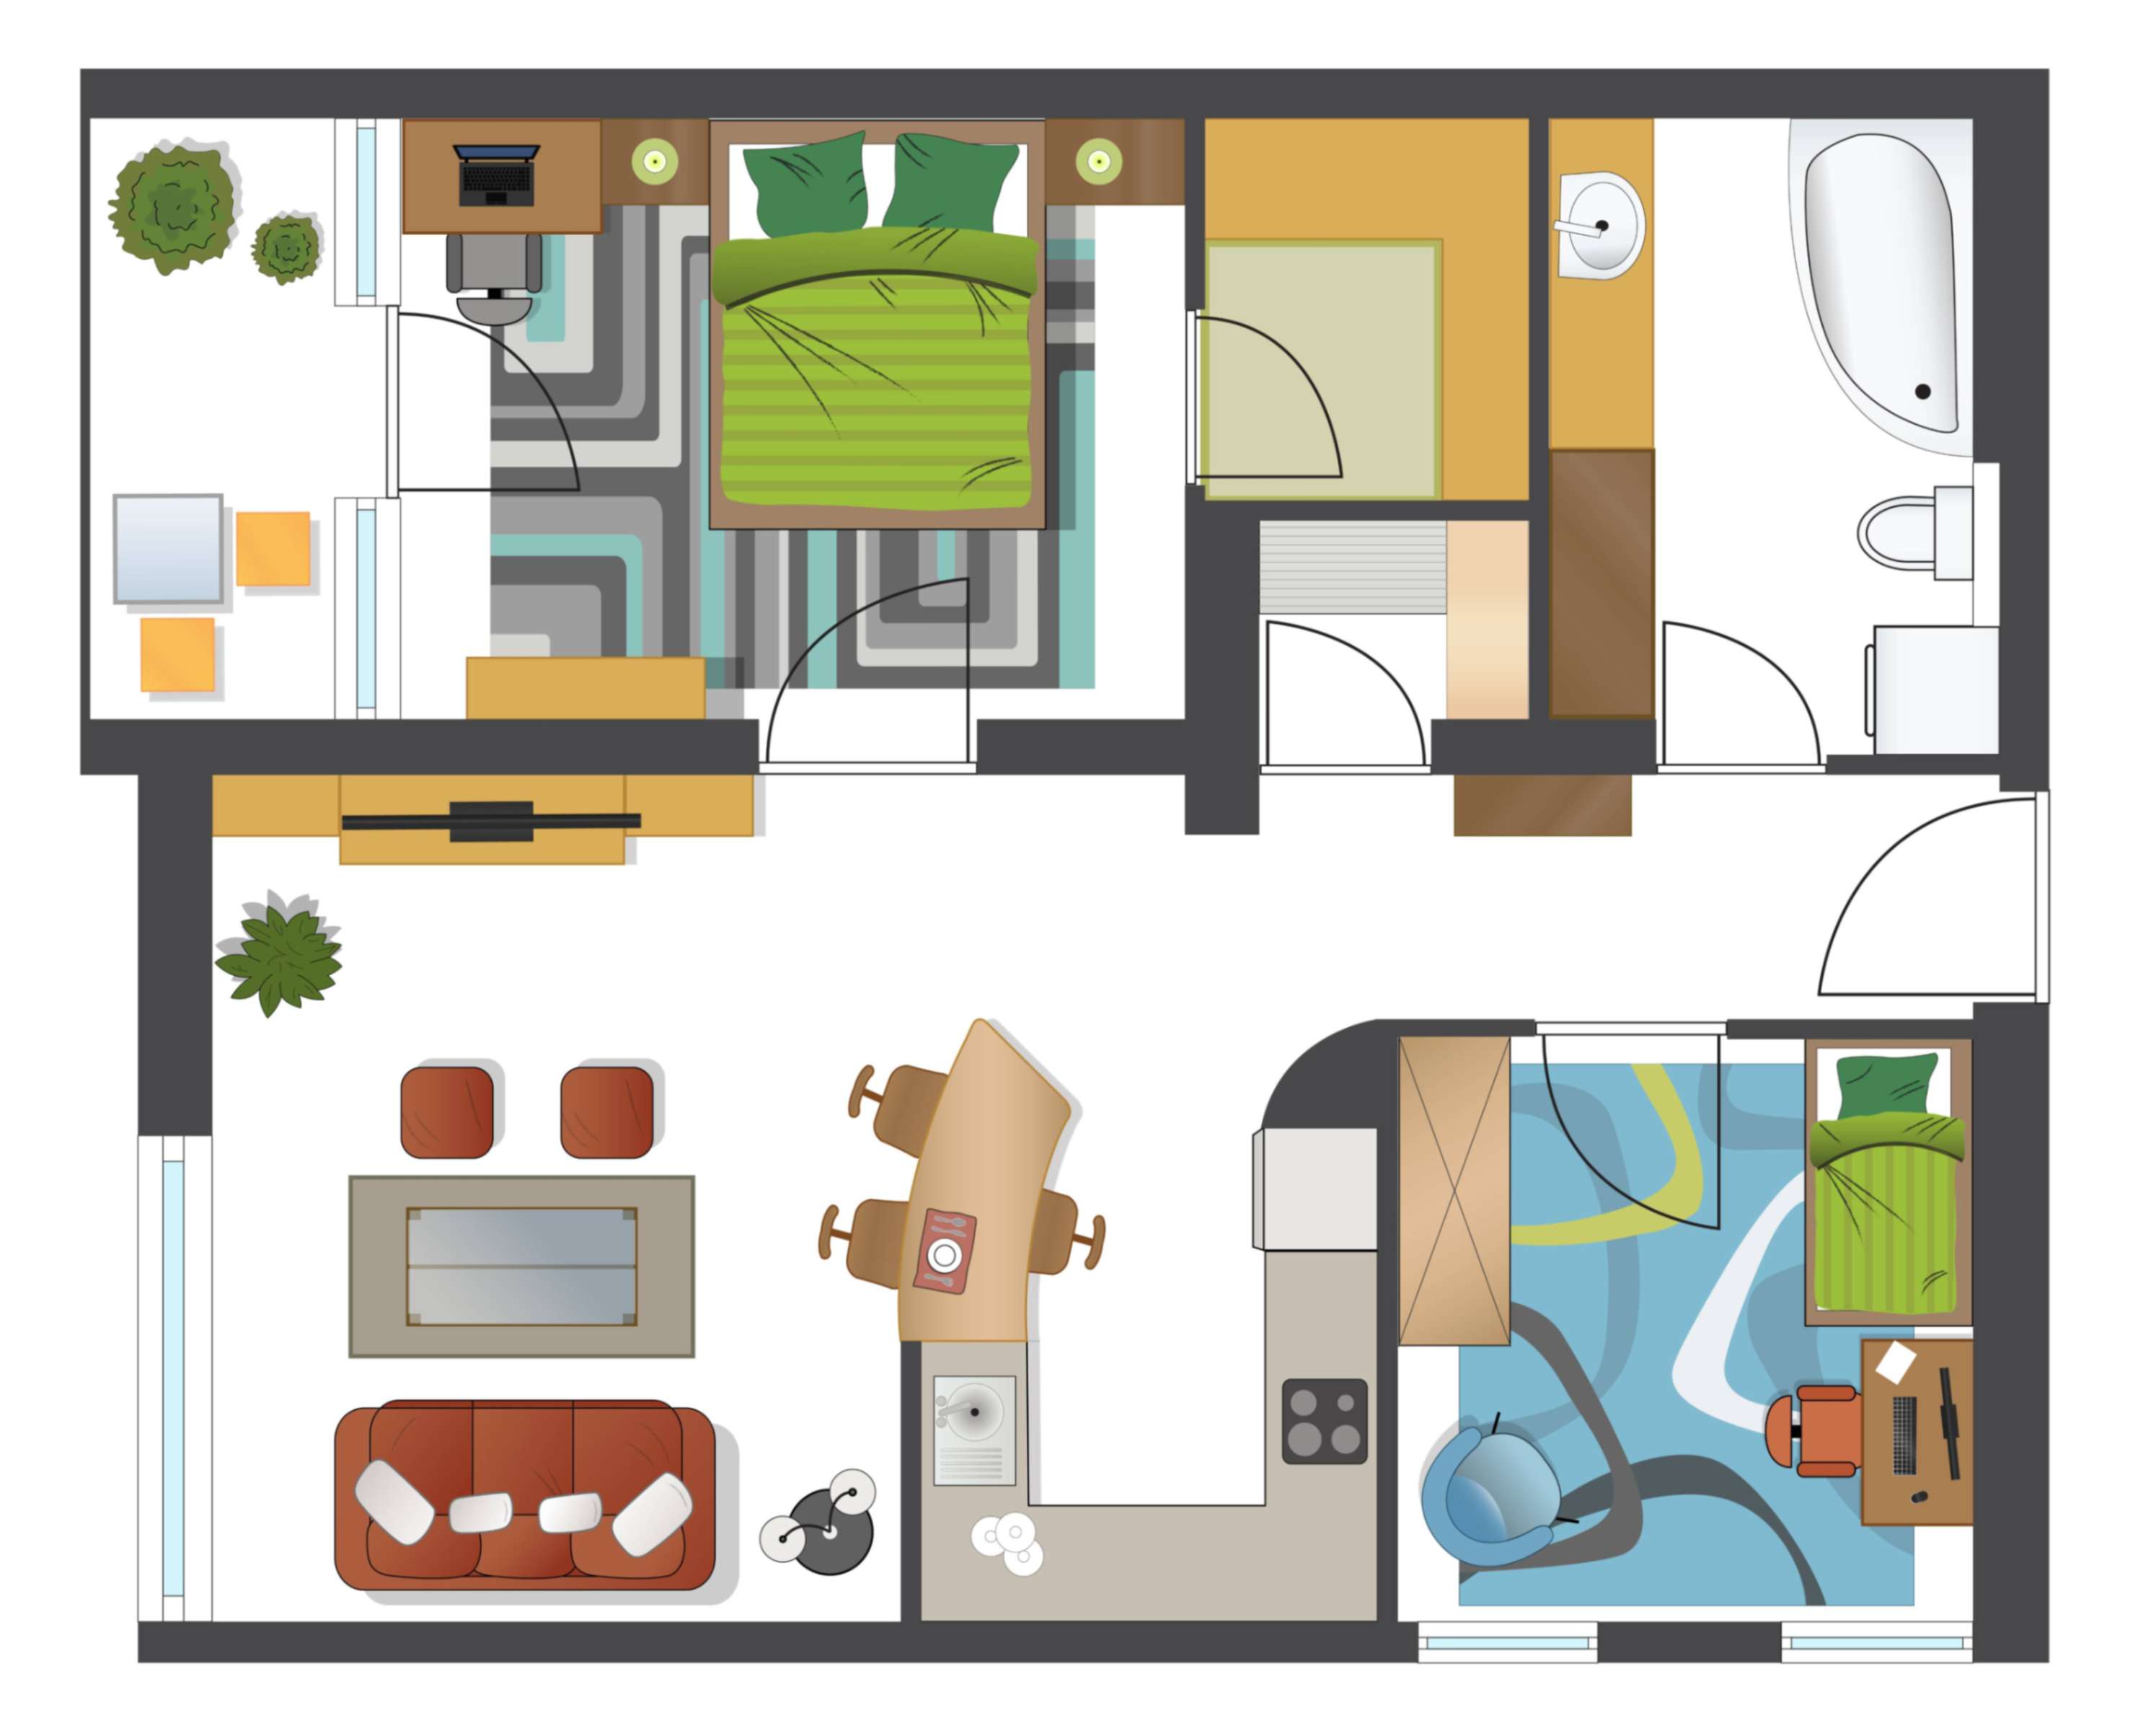 Opremljanje doma - pisan načrt postavite prostorov in notranje opreme.